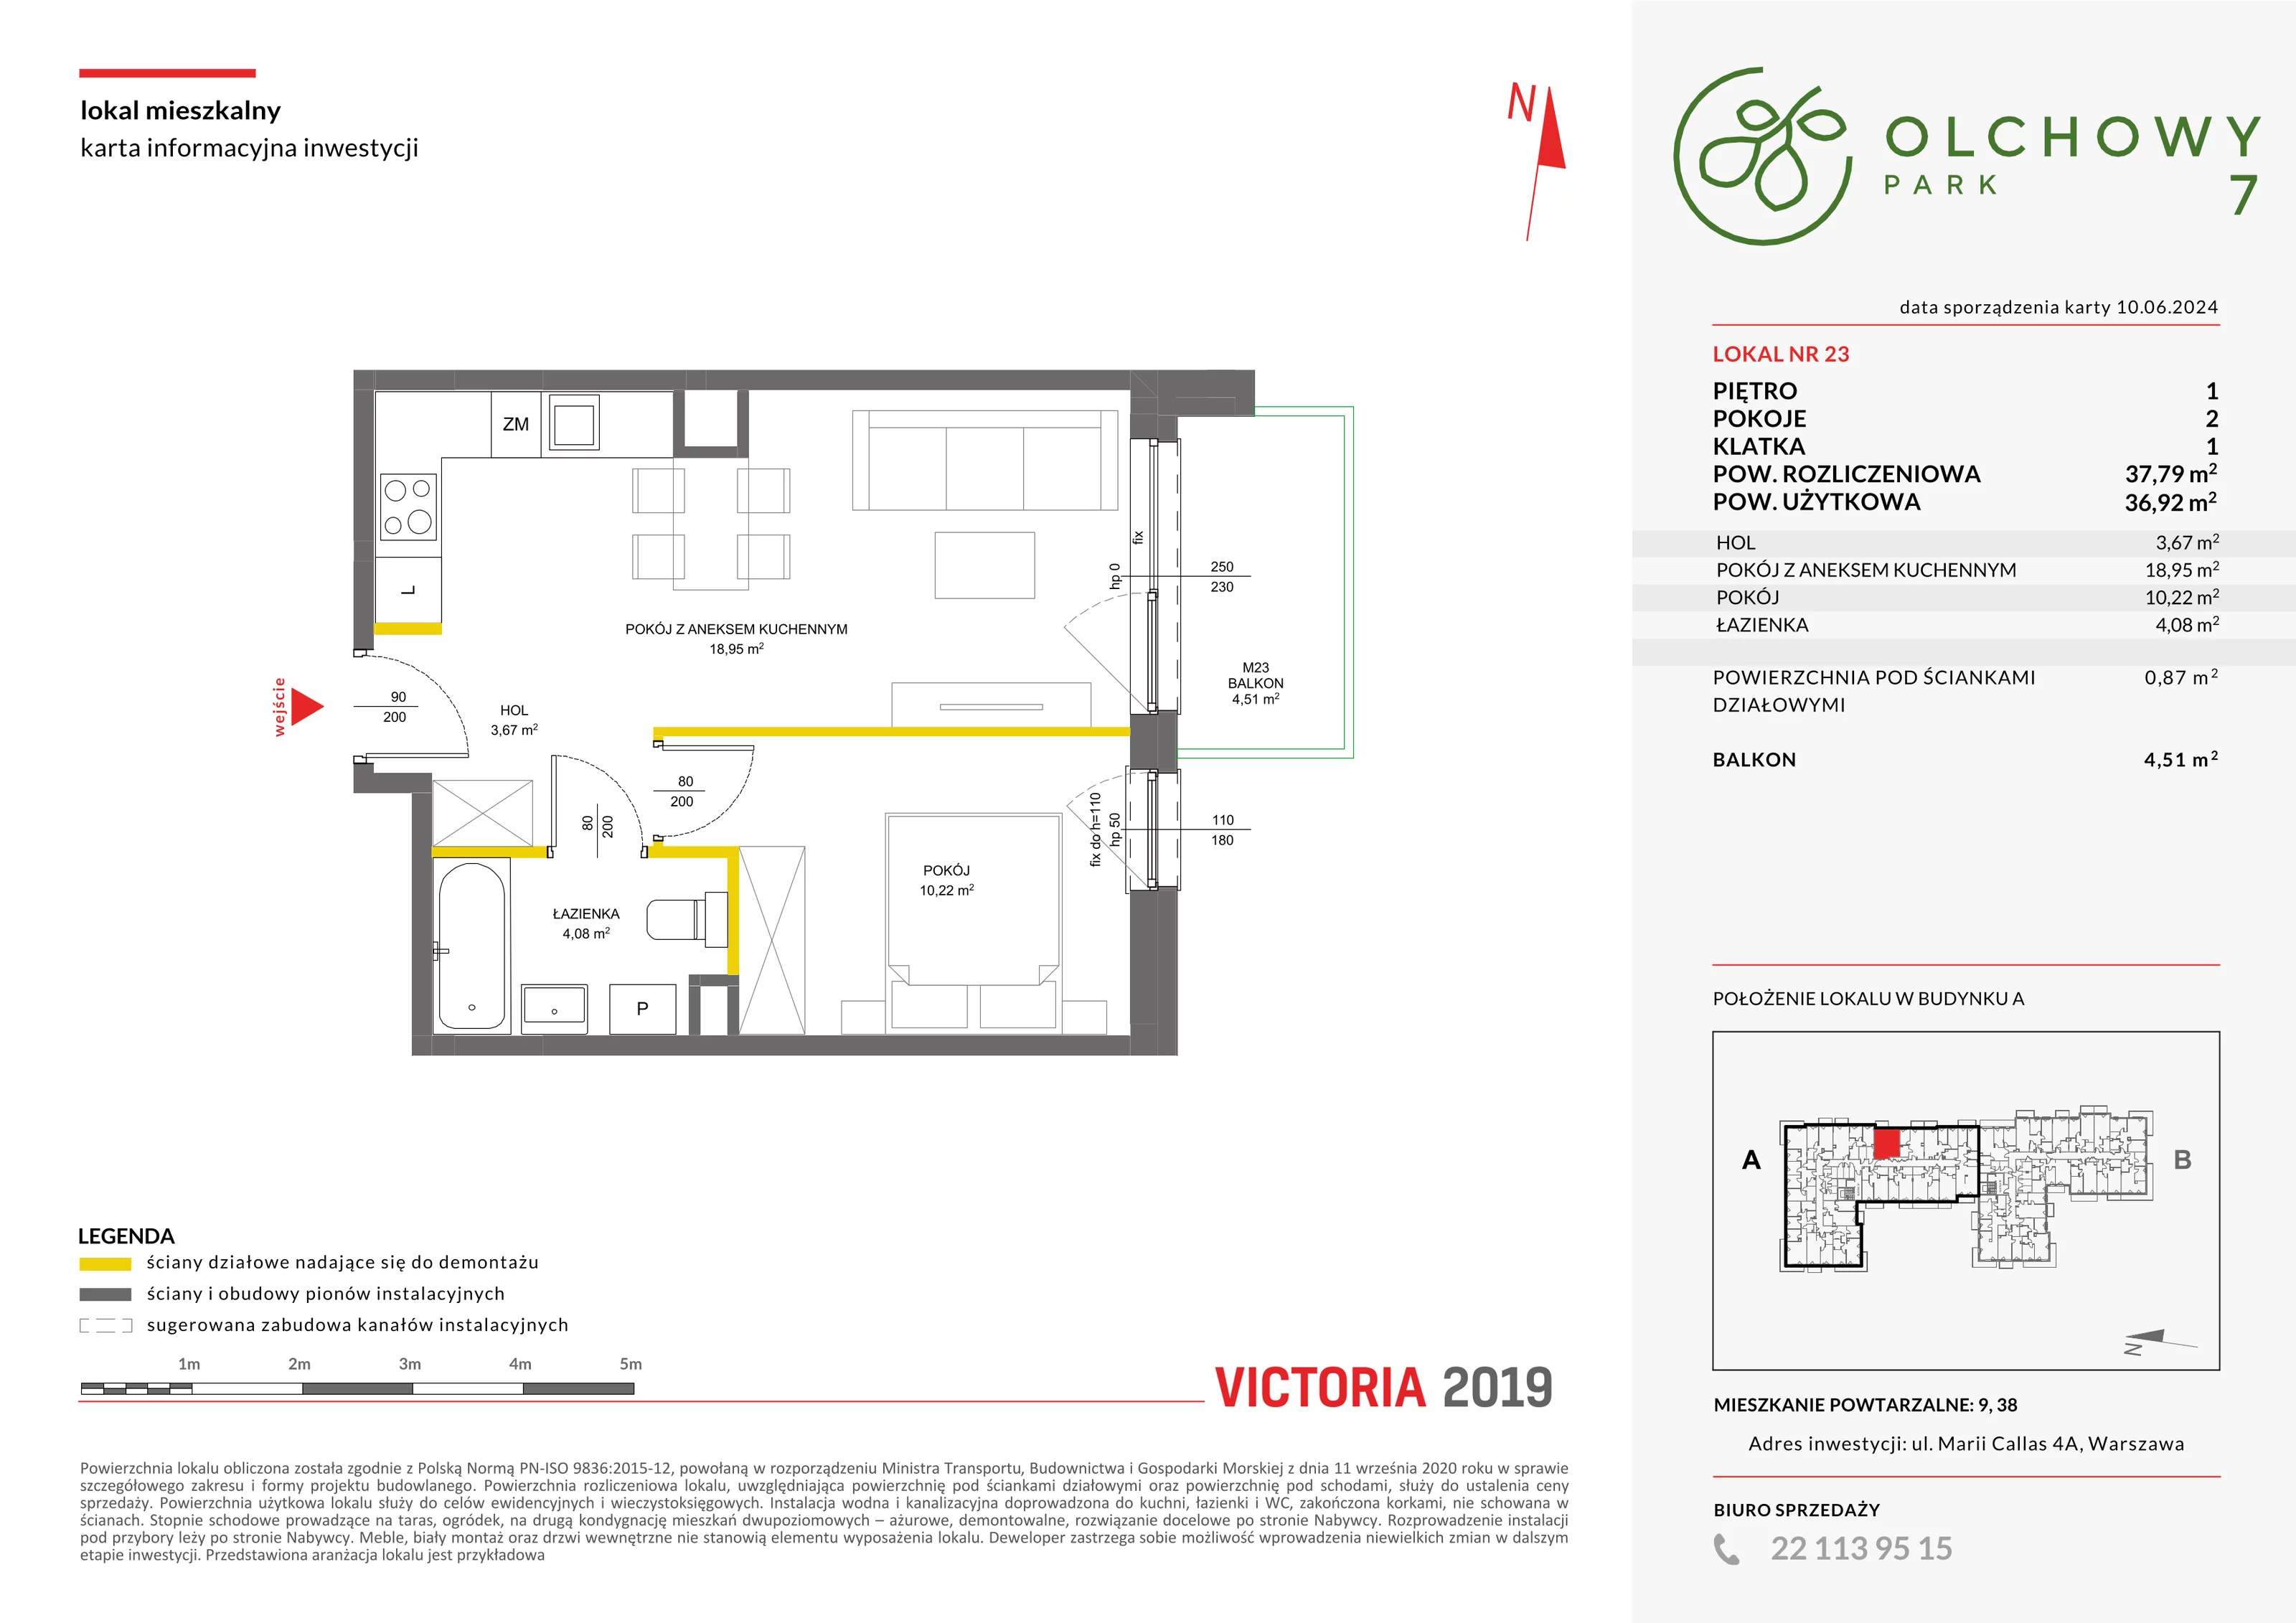 Mieszkanie 37,79 m², piętro 1, oferta nr VII/23, Olchowy Park 7, Warszawa, Białołęka, Kobiałka, ul. Marii Callas 4A